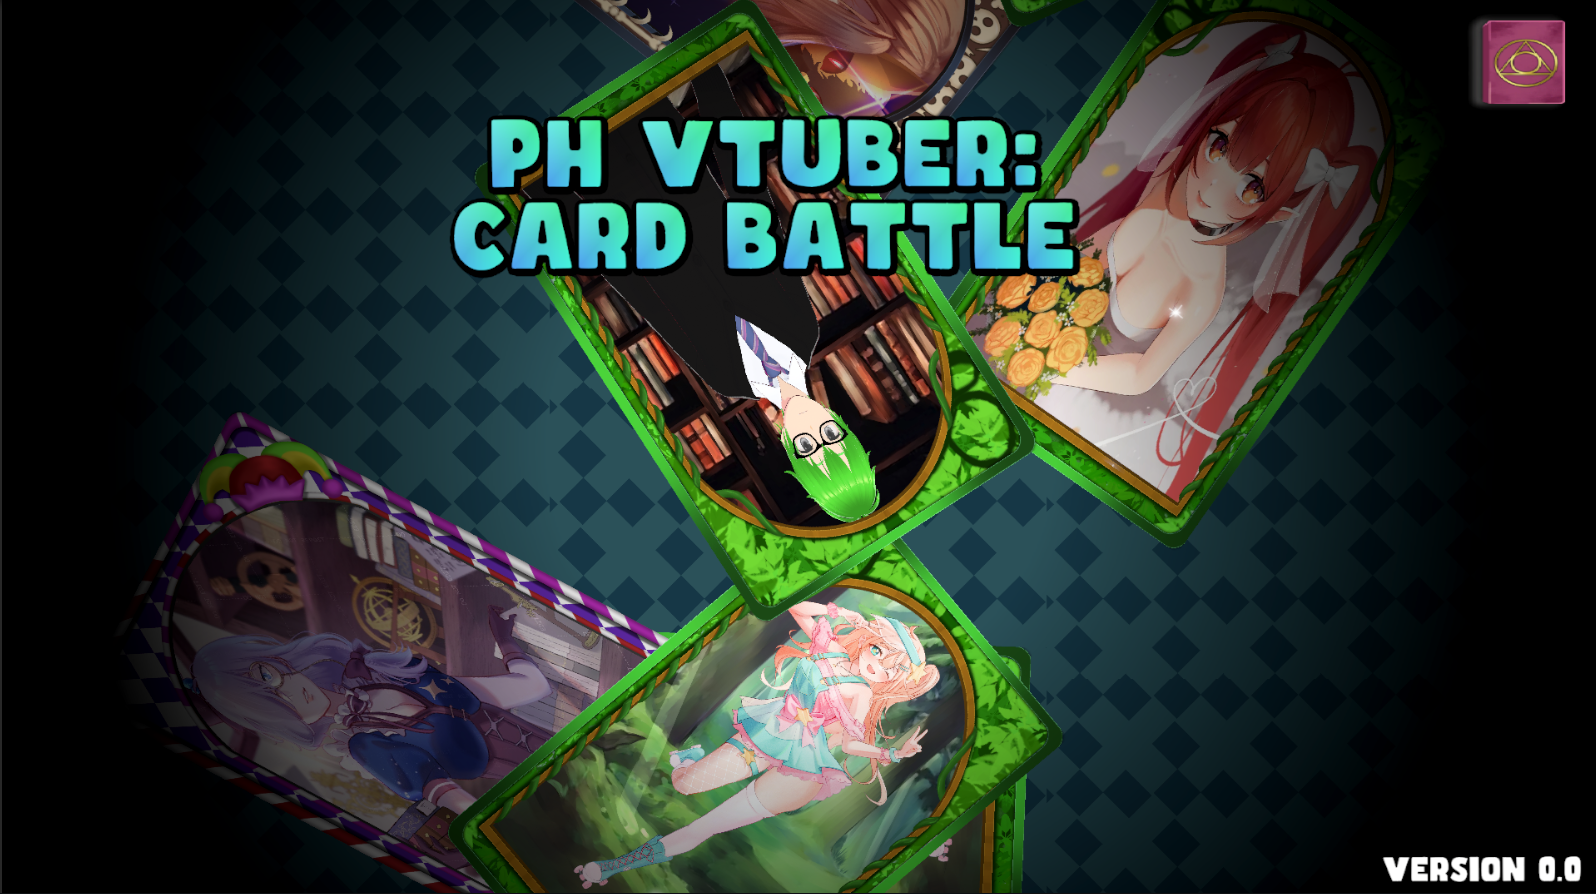 PhVtuber: Card Battle